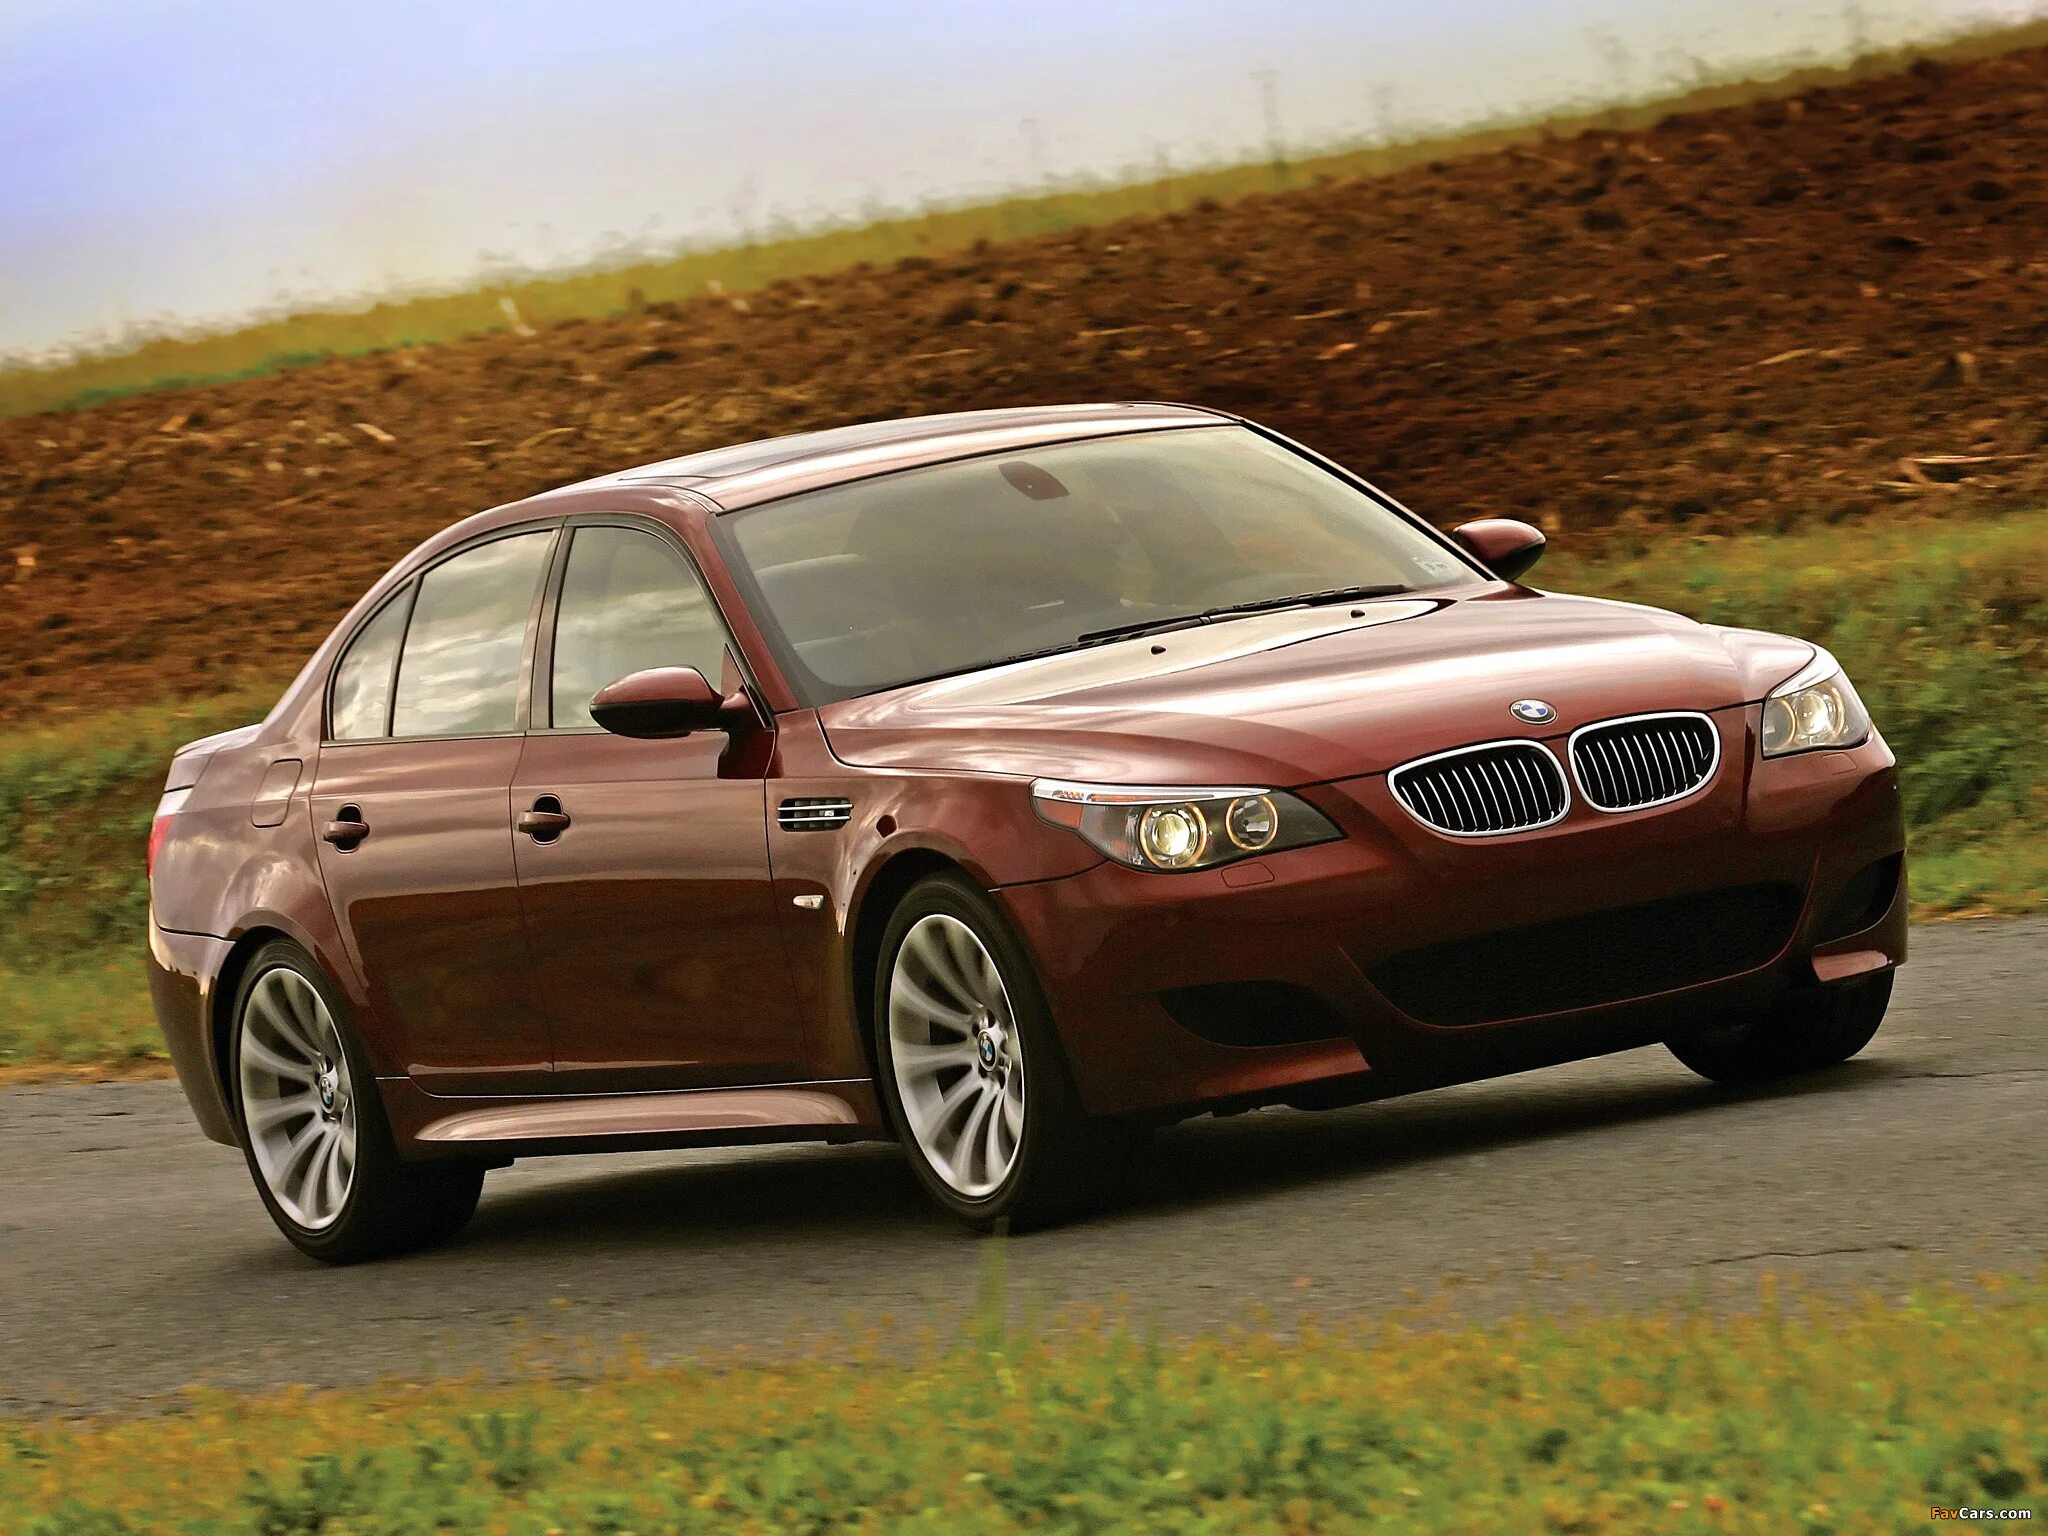 Год выпуска е60. BMW m5 2007. BMW m5 e60 2004. BMW 5 e60 2007. BMW m5 e60 2007.